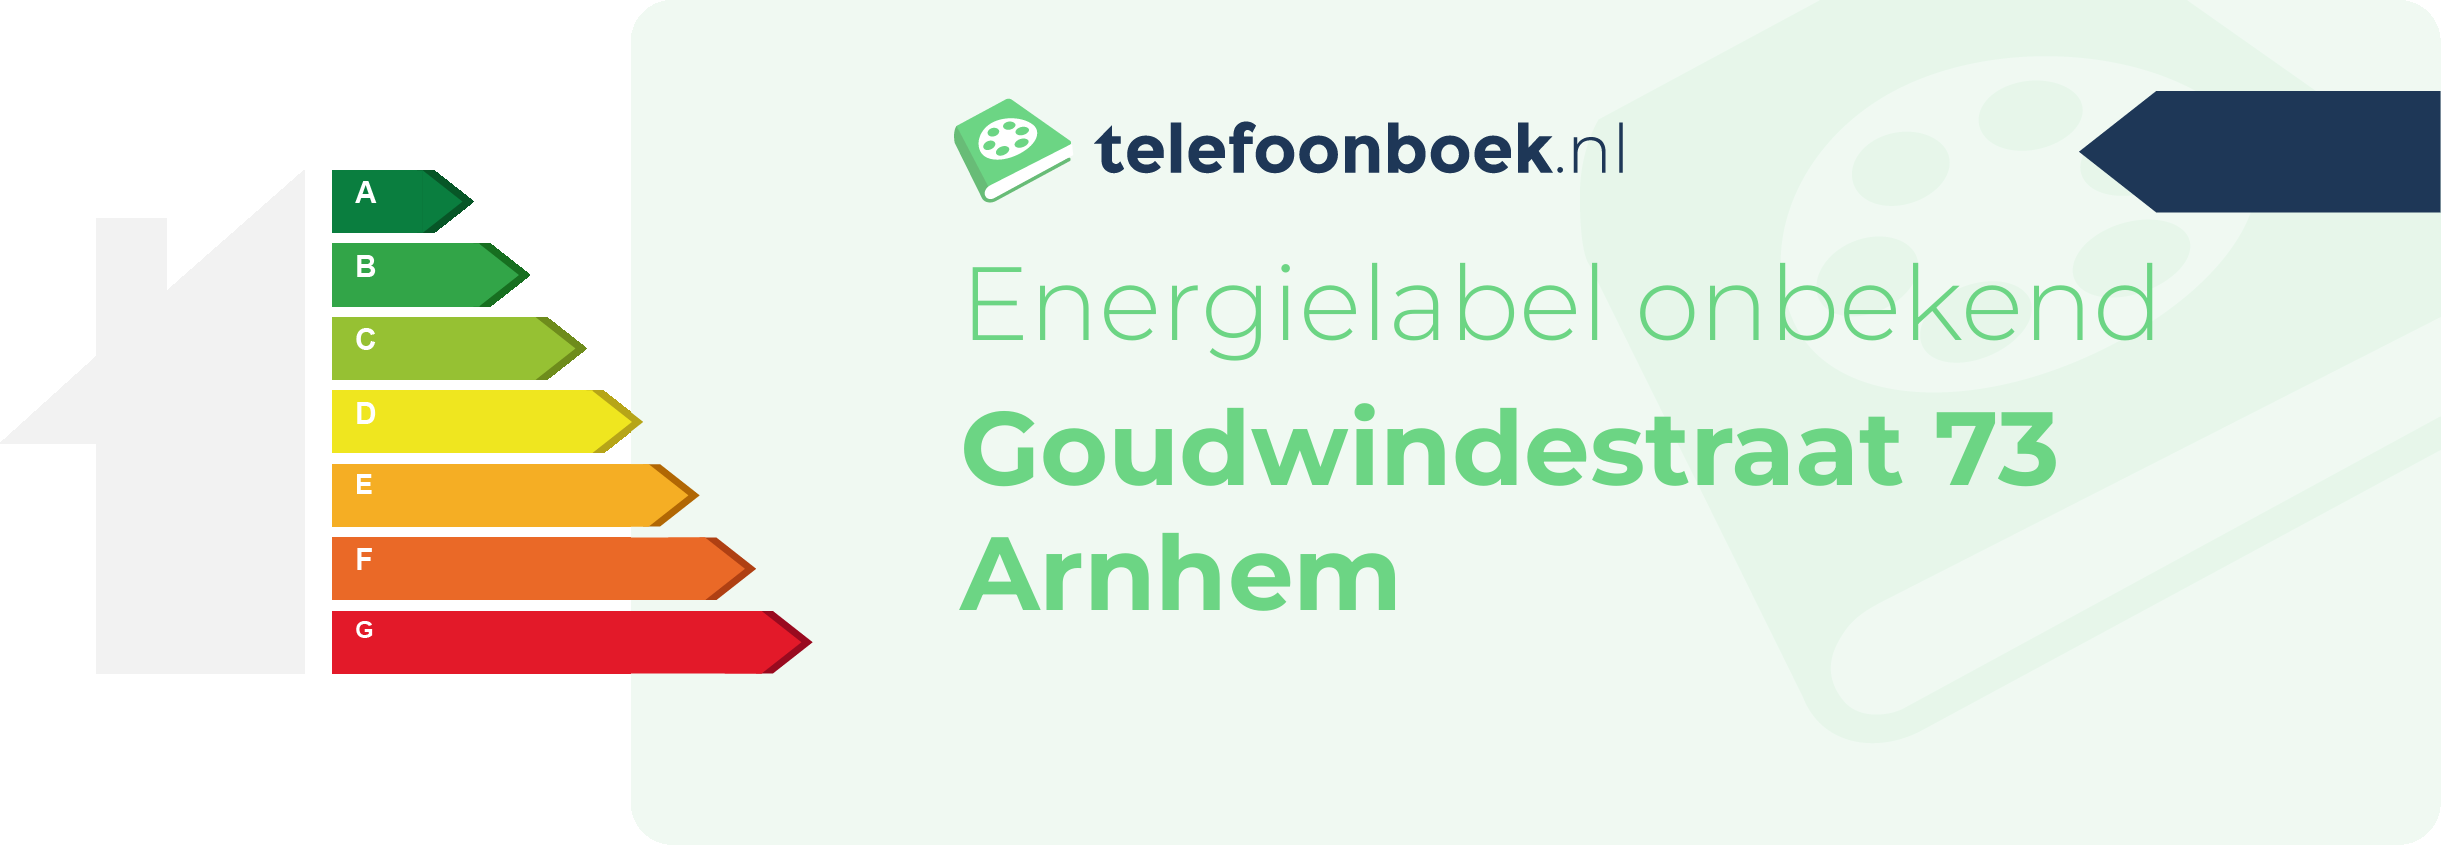 Energielabel Goudwindestraat 73 Arnhem